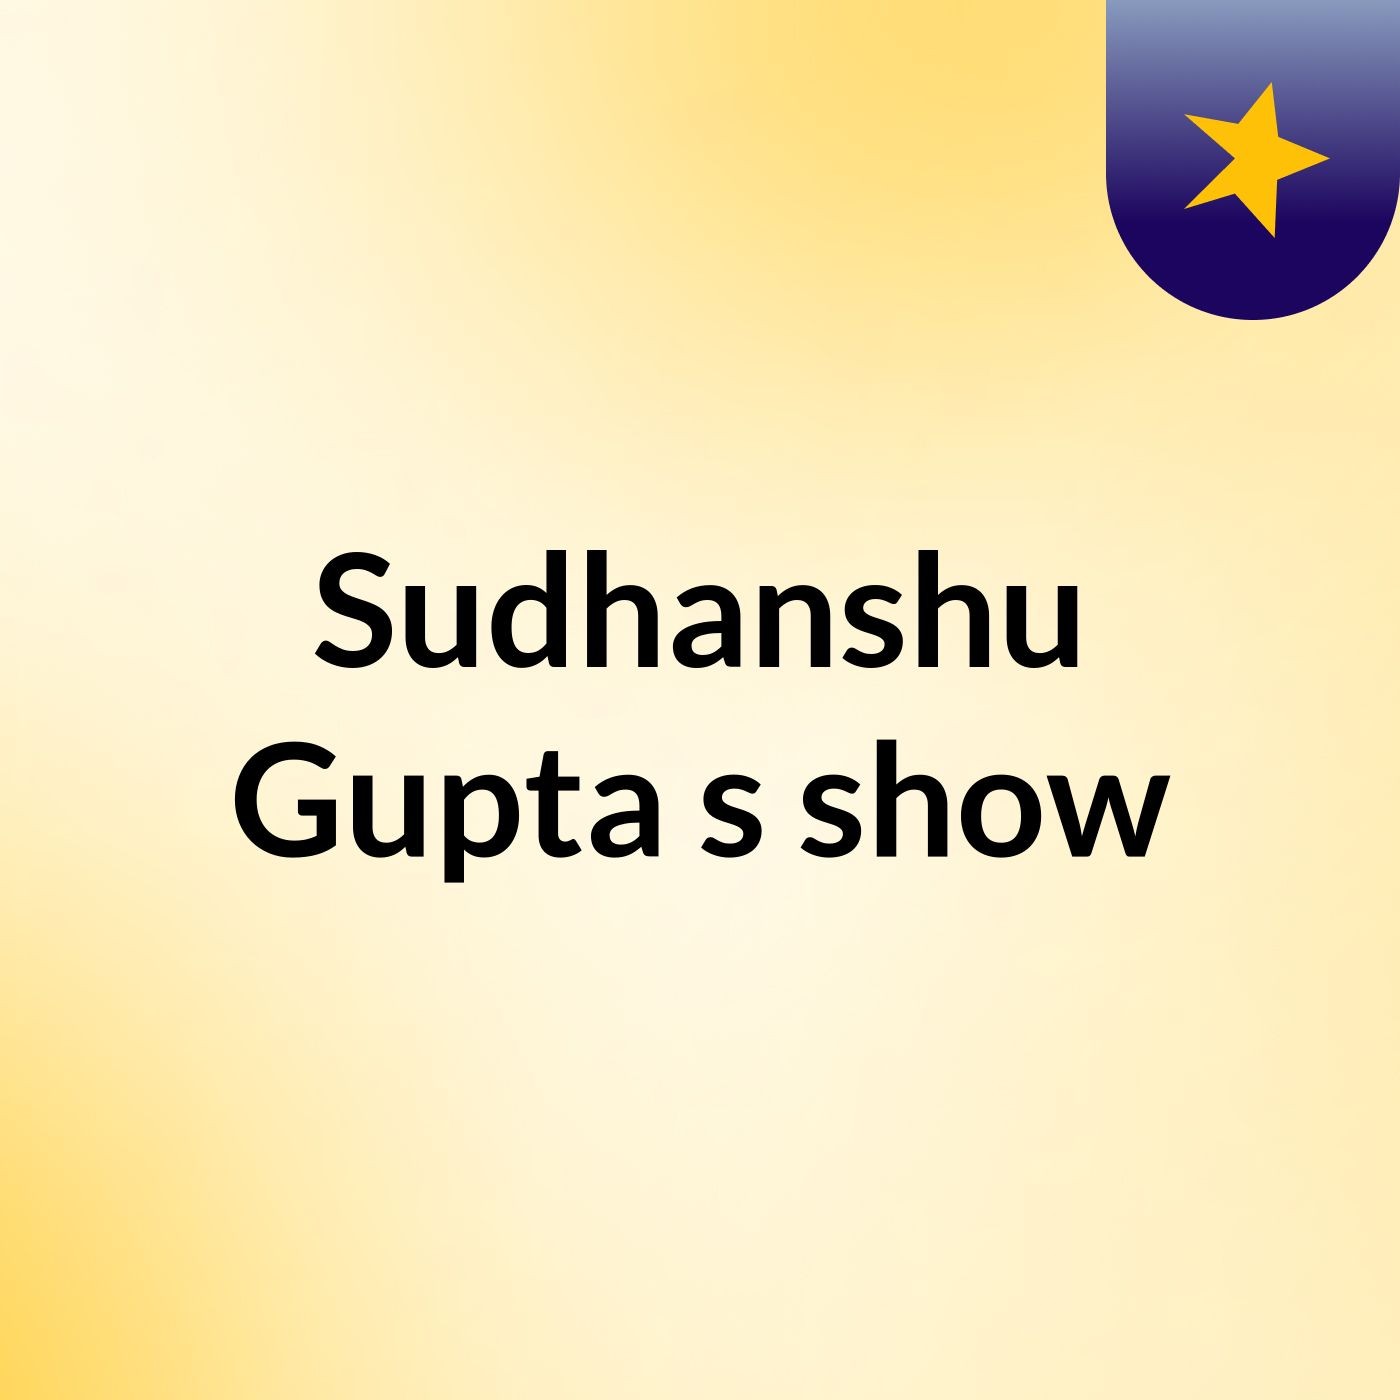 Sudhanshu Gupta's show